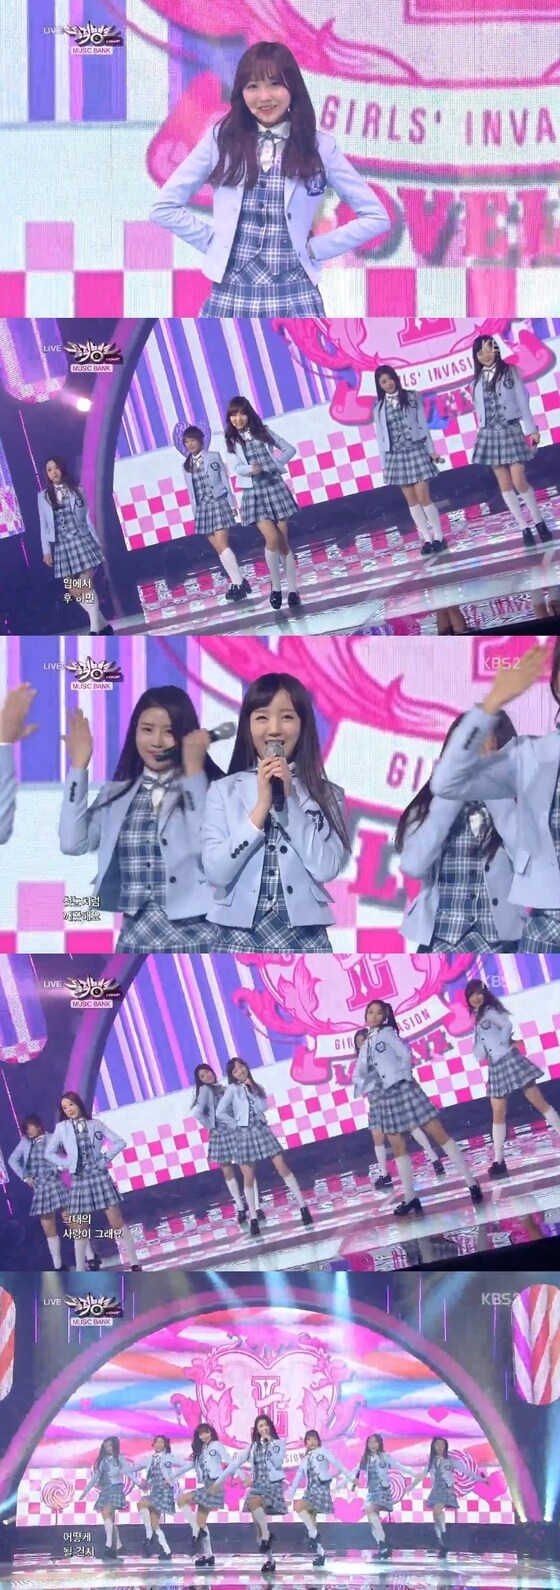 21일 오후 6시30분 방송된 KBS2 '뮤직뱅크'에서 러블리즈의 '캔디 젤리 러브' 무대가 공개됐다. © KBS2 ´뮤직뱅크´ 캡처